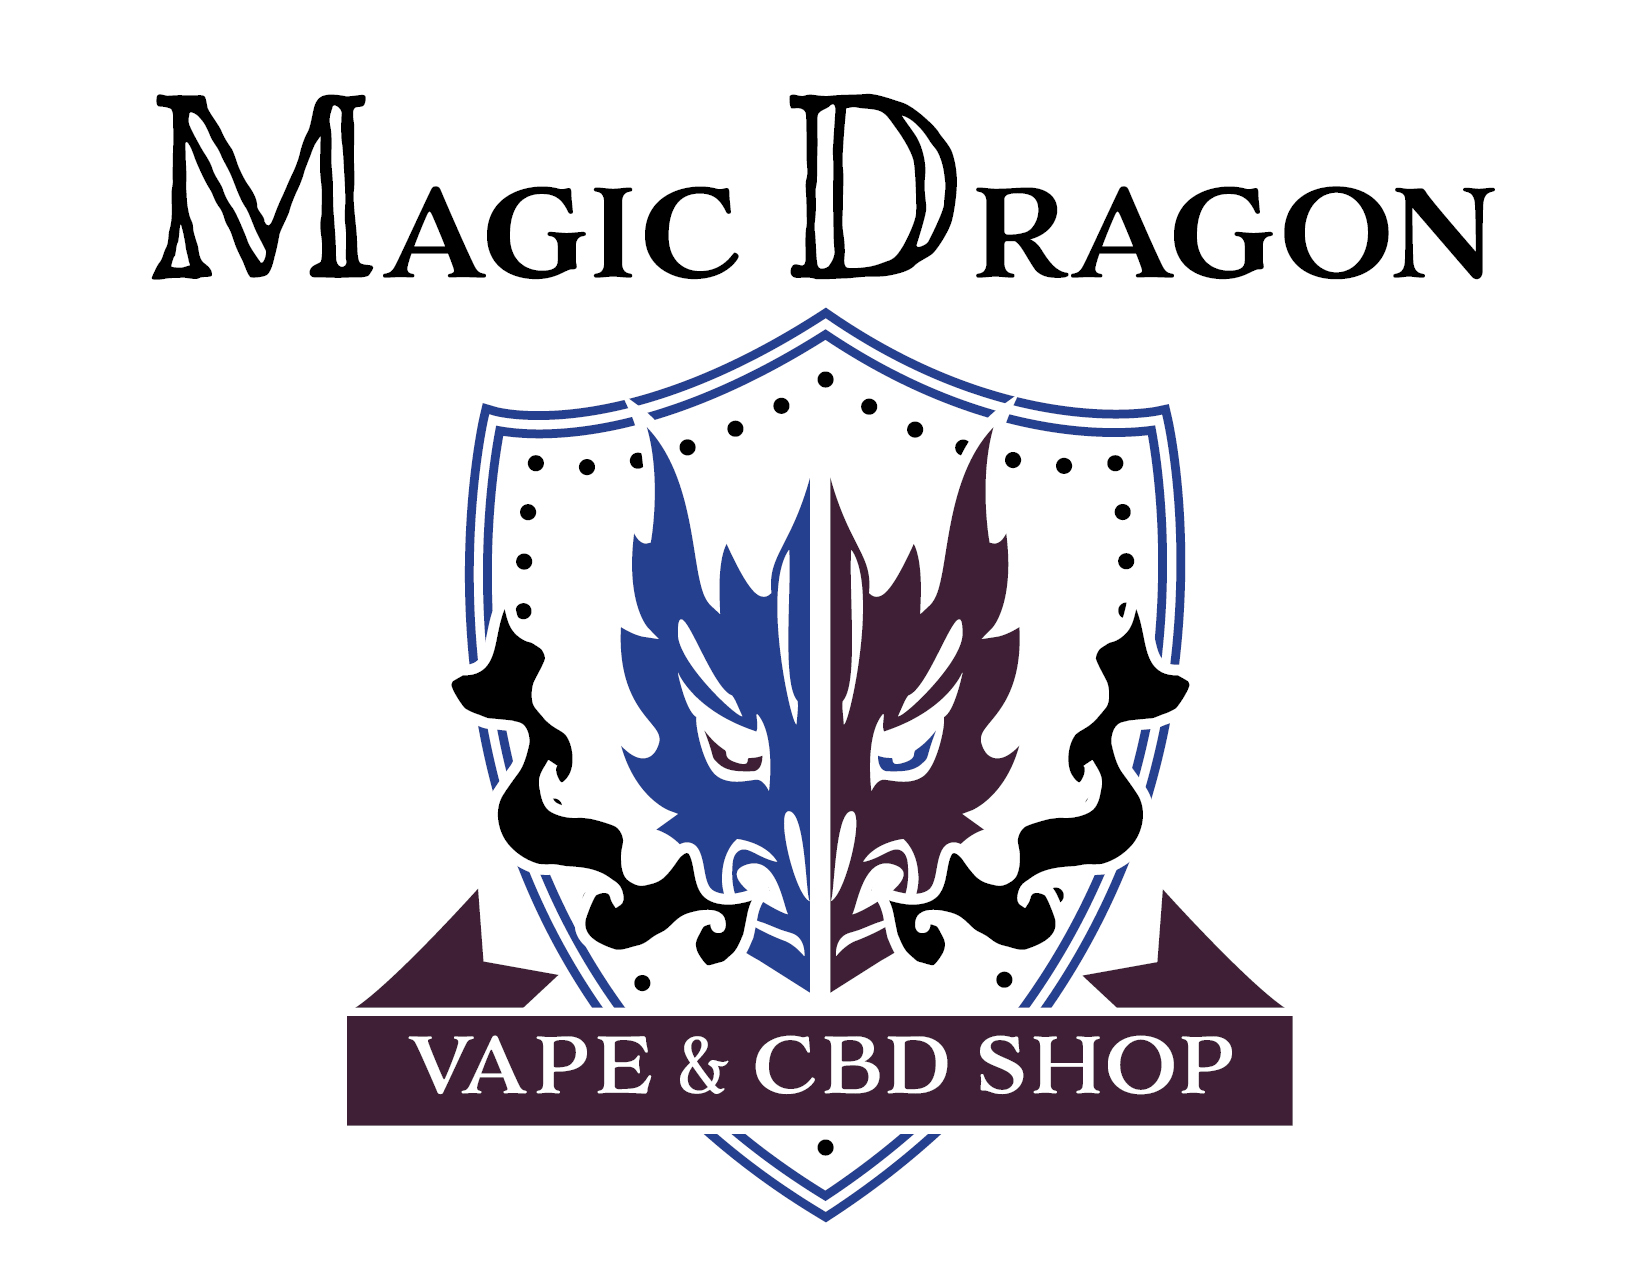 Magic Dragon Vape & CBD